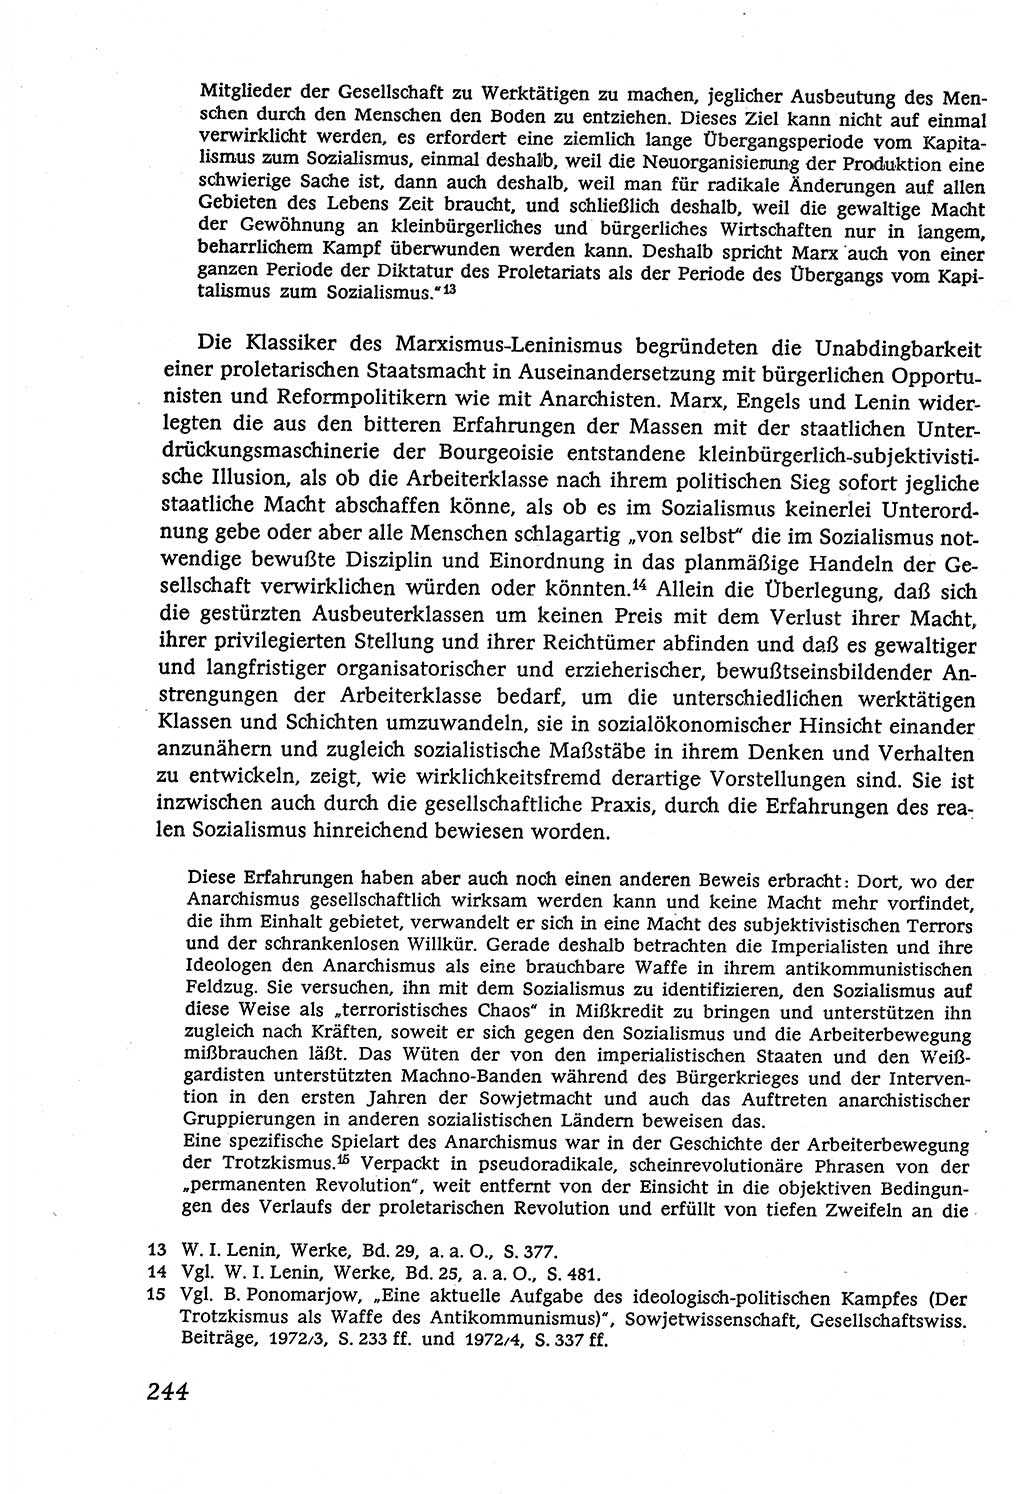 Marxistisch-leninistische (ML) Staats- und Rechtstheorie [Deutsche Demokratische Republik (DDR)], Lehrbuch 1980, Seite 244 (ML St.-R.-Th. DDR Lb. 1980, S. 244)